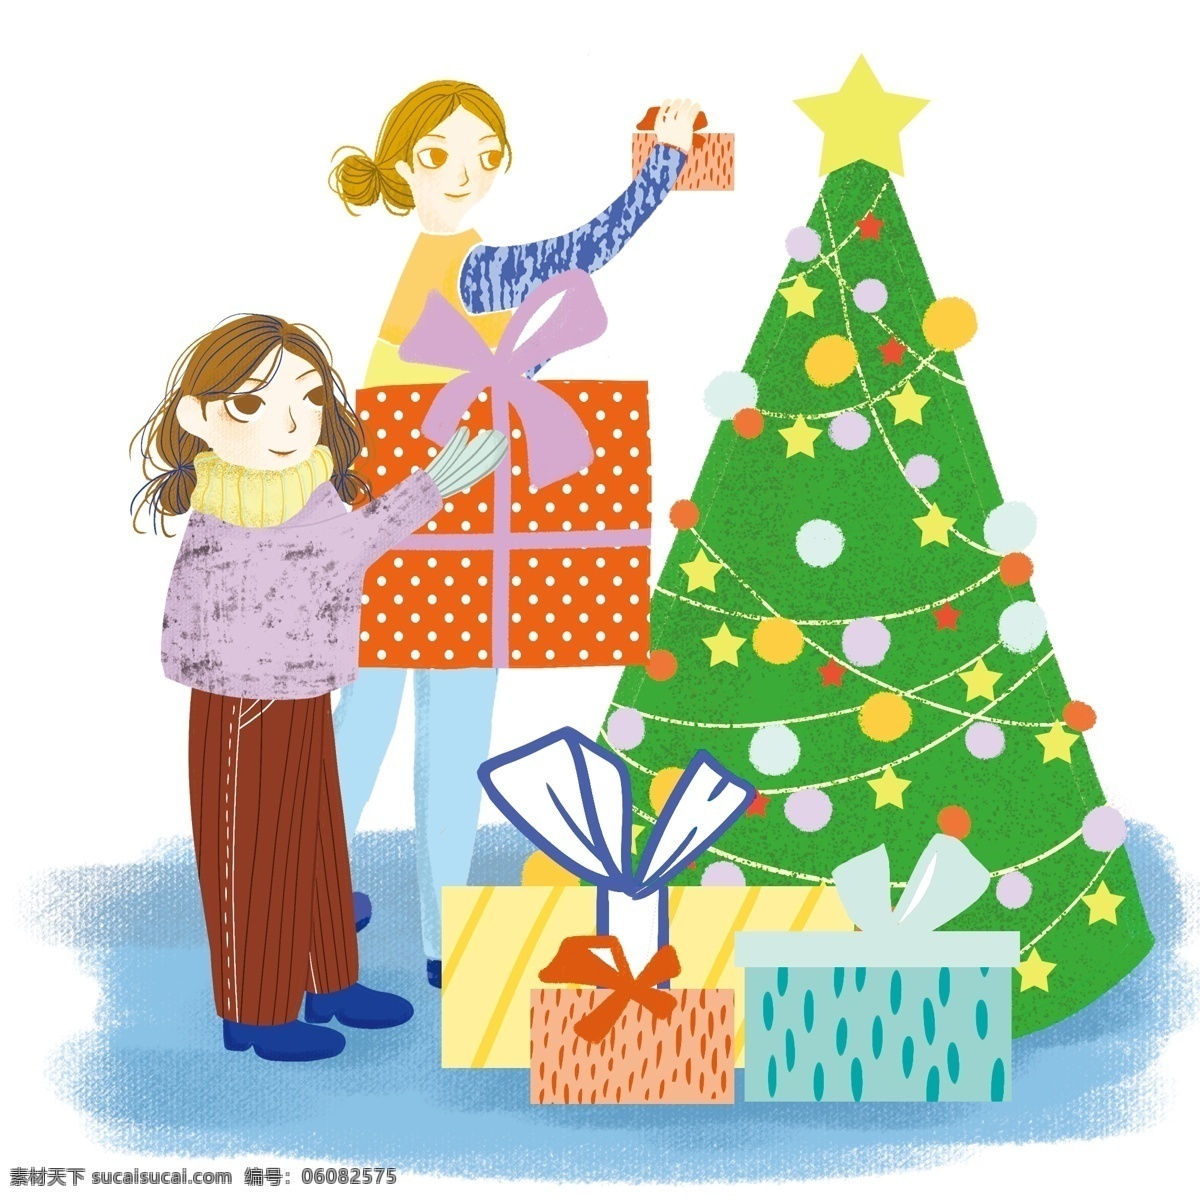 卡通 手绘 圣诞节 收到 礼物 美丽 女孩 创意海报 创意 创意设计 卡通手绘 水彩 彩色 海报 节日 收到礼物 开心